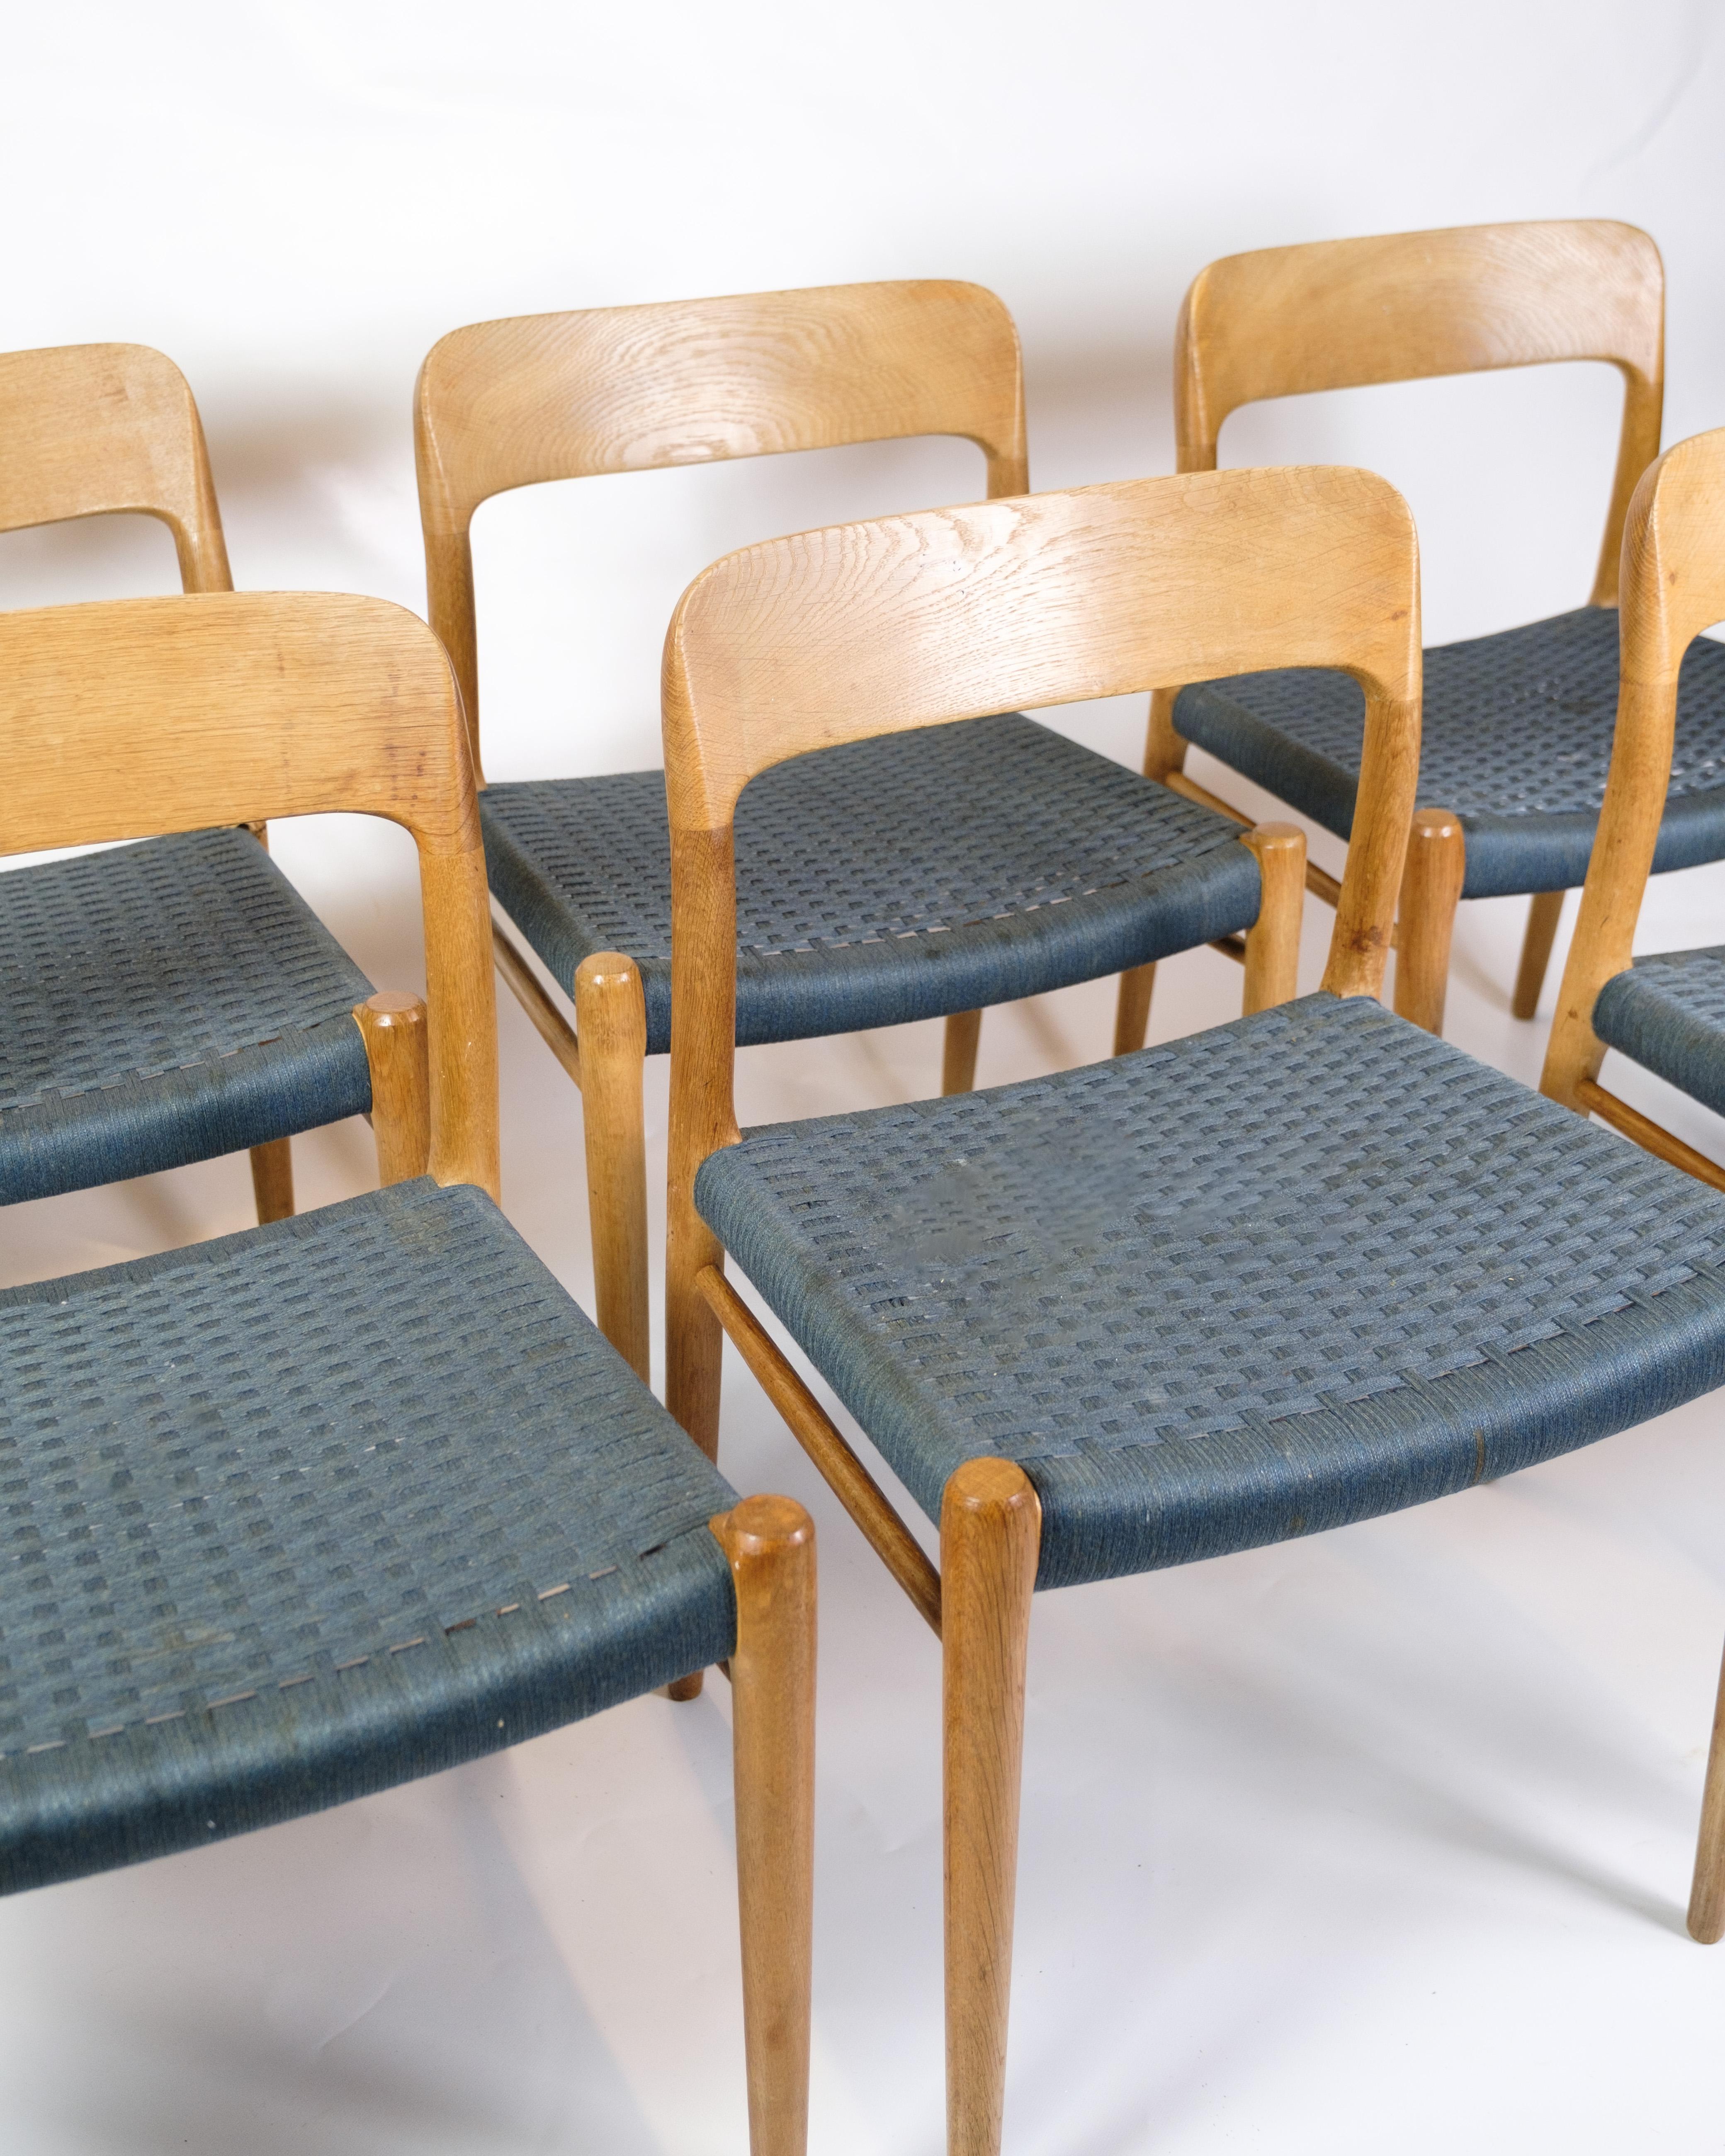 *PREIS BEINHALTET DIE VOLLSTÄNDIGE AUFARBEITUNG DES HOLZES ALLER STÜHLE*.

Das Set aus sechs Esszimmerstühlen, bekannt als Modell 75, ist ein hervorragendes Beispiel für dänisches Möbeldesign aus den 1960er Jahren. Diese Stühle, die von dem